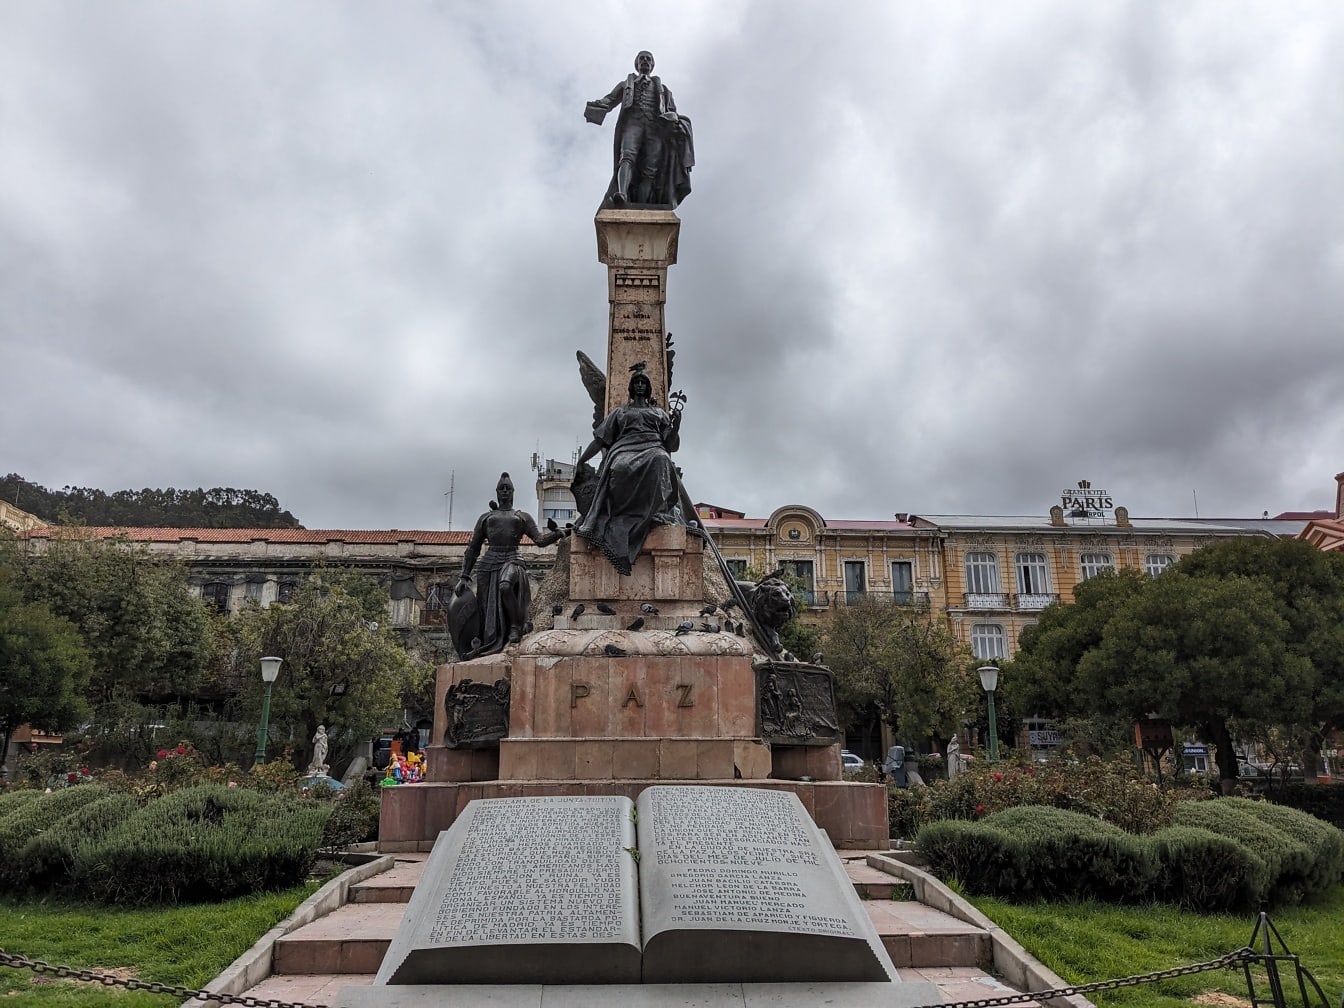 Estátua de um Pedro Domingo Murillo em um pedestal em um parque da cidade de La Paz